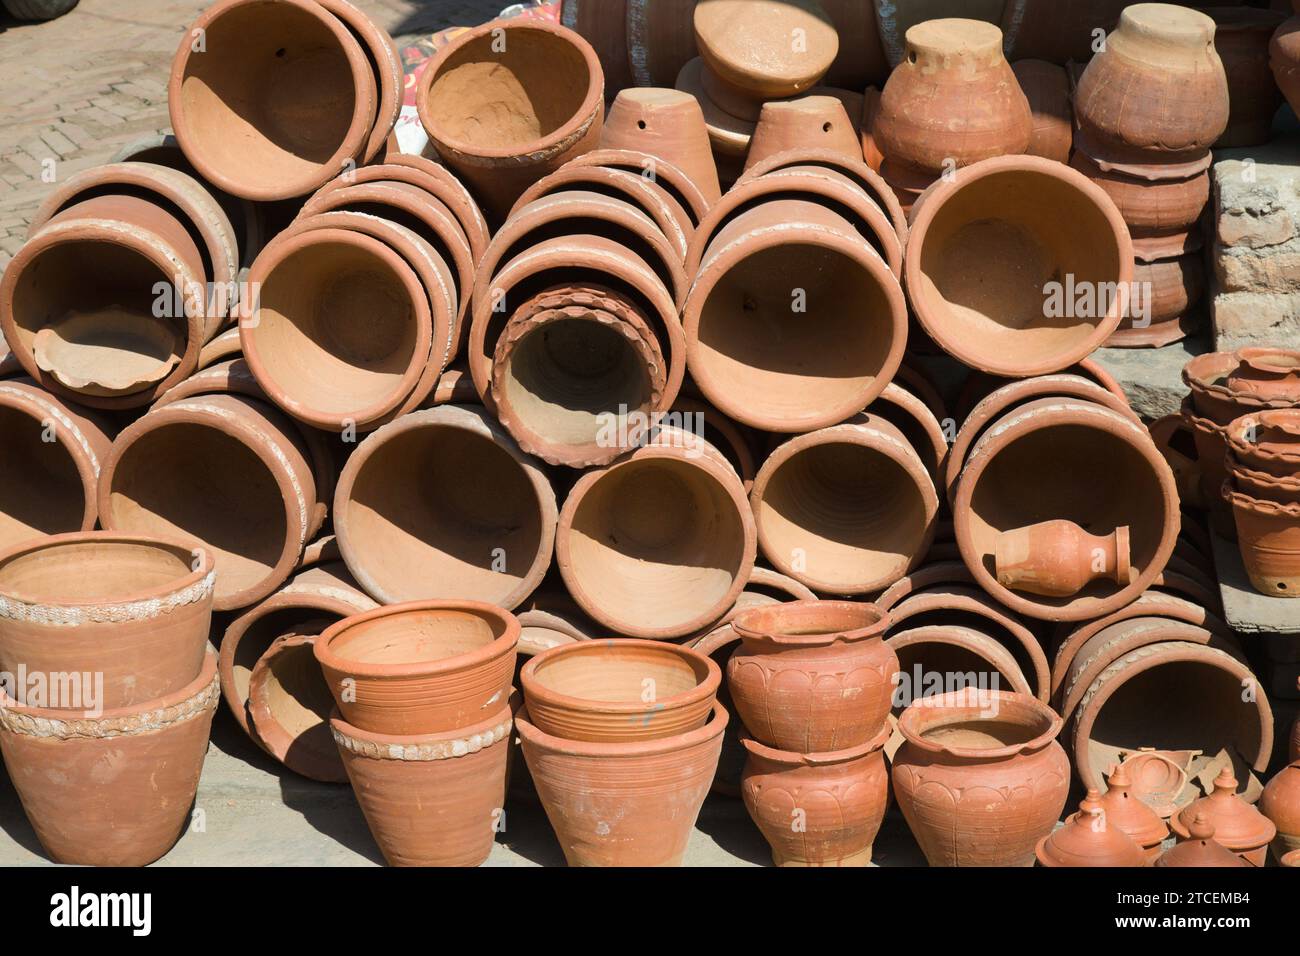 Nepal, Bhaktapur,  potters' square, market, Stock Photo